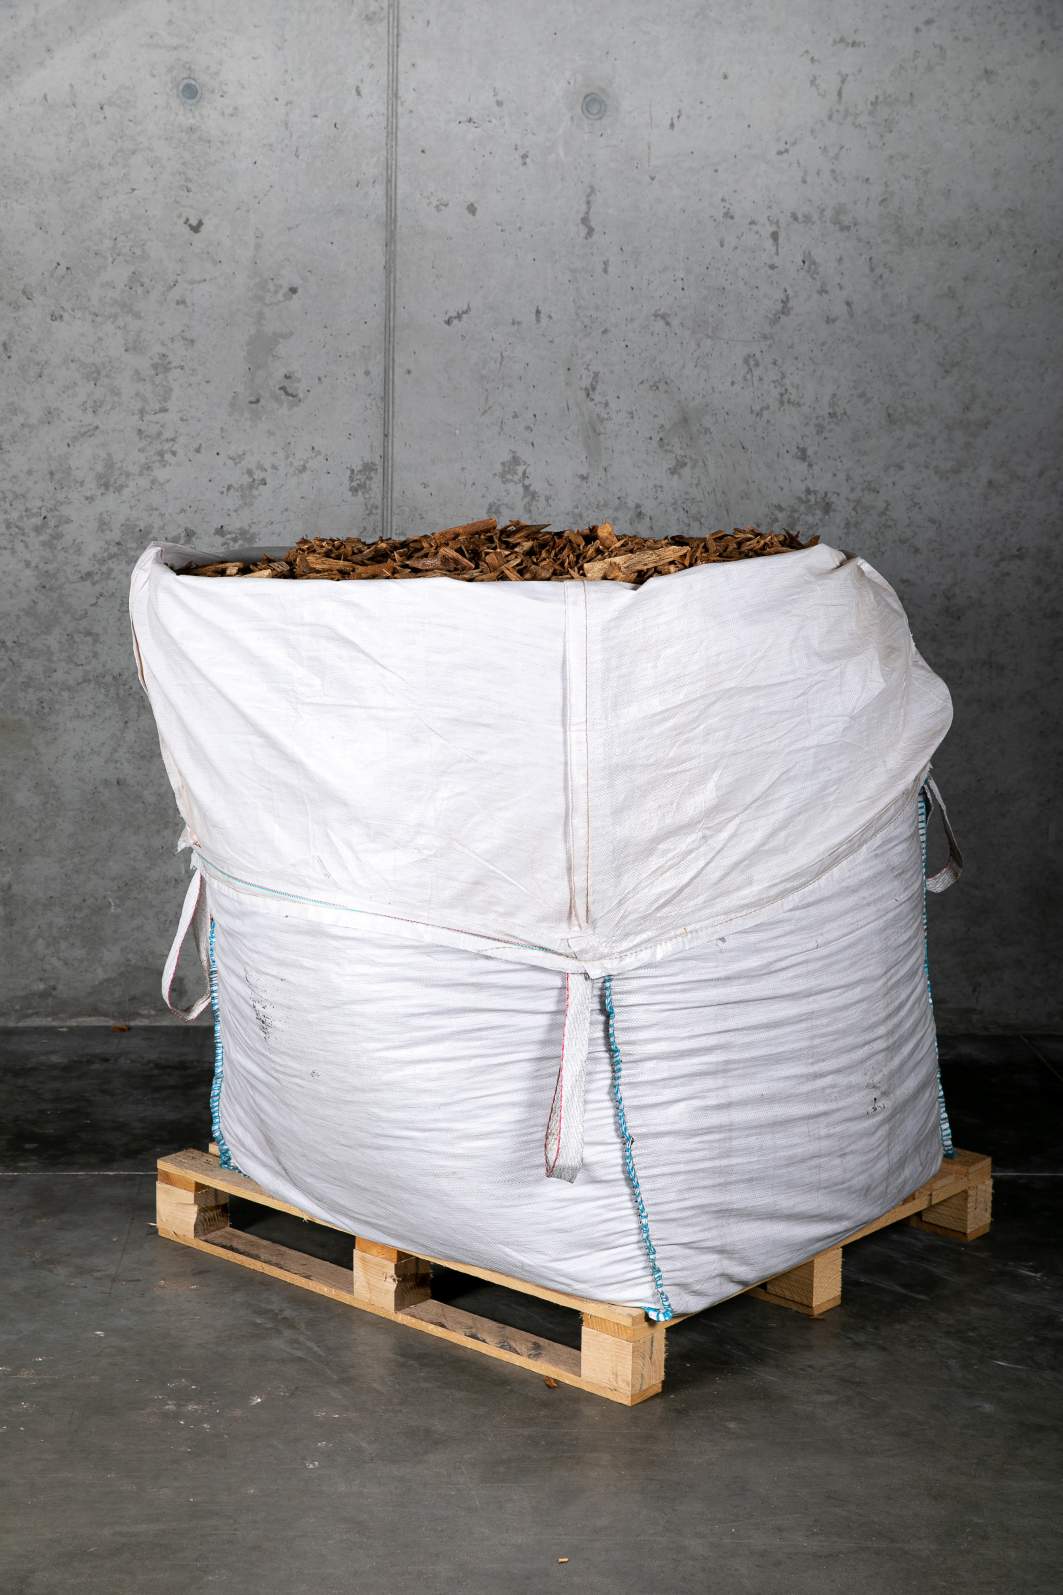 Paillage naturel copeaux de bois big bag 1 m3 pour 20m2